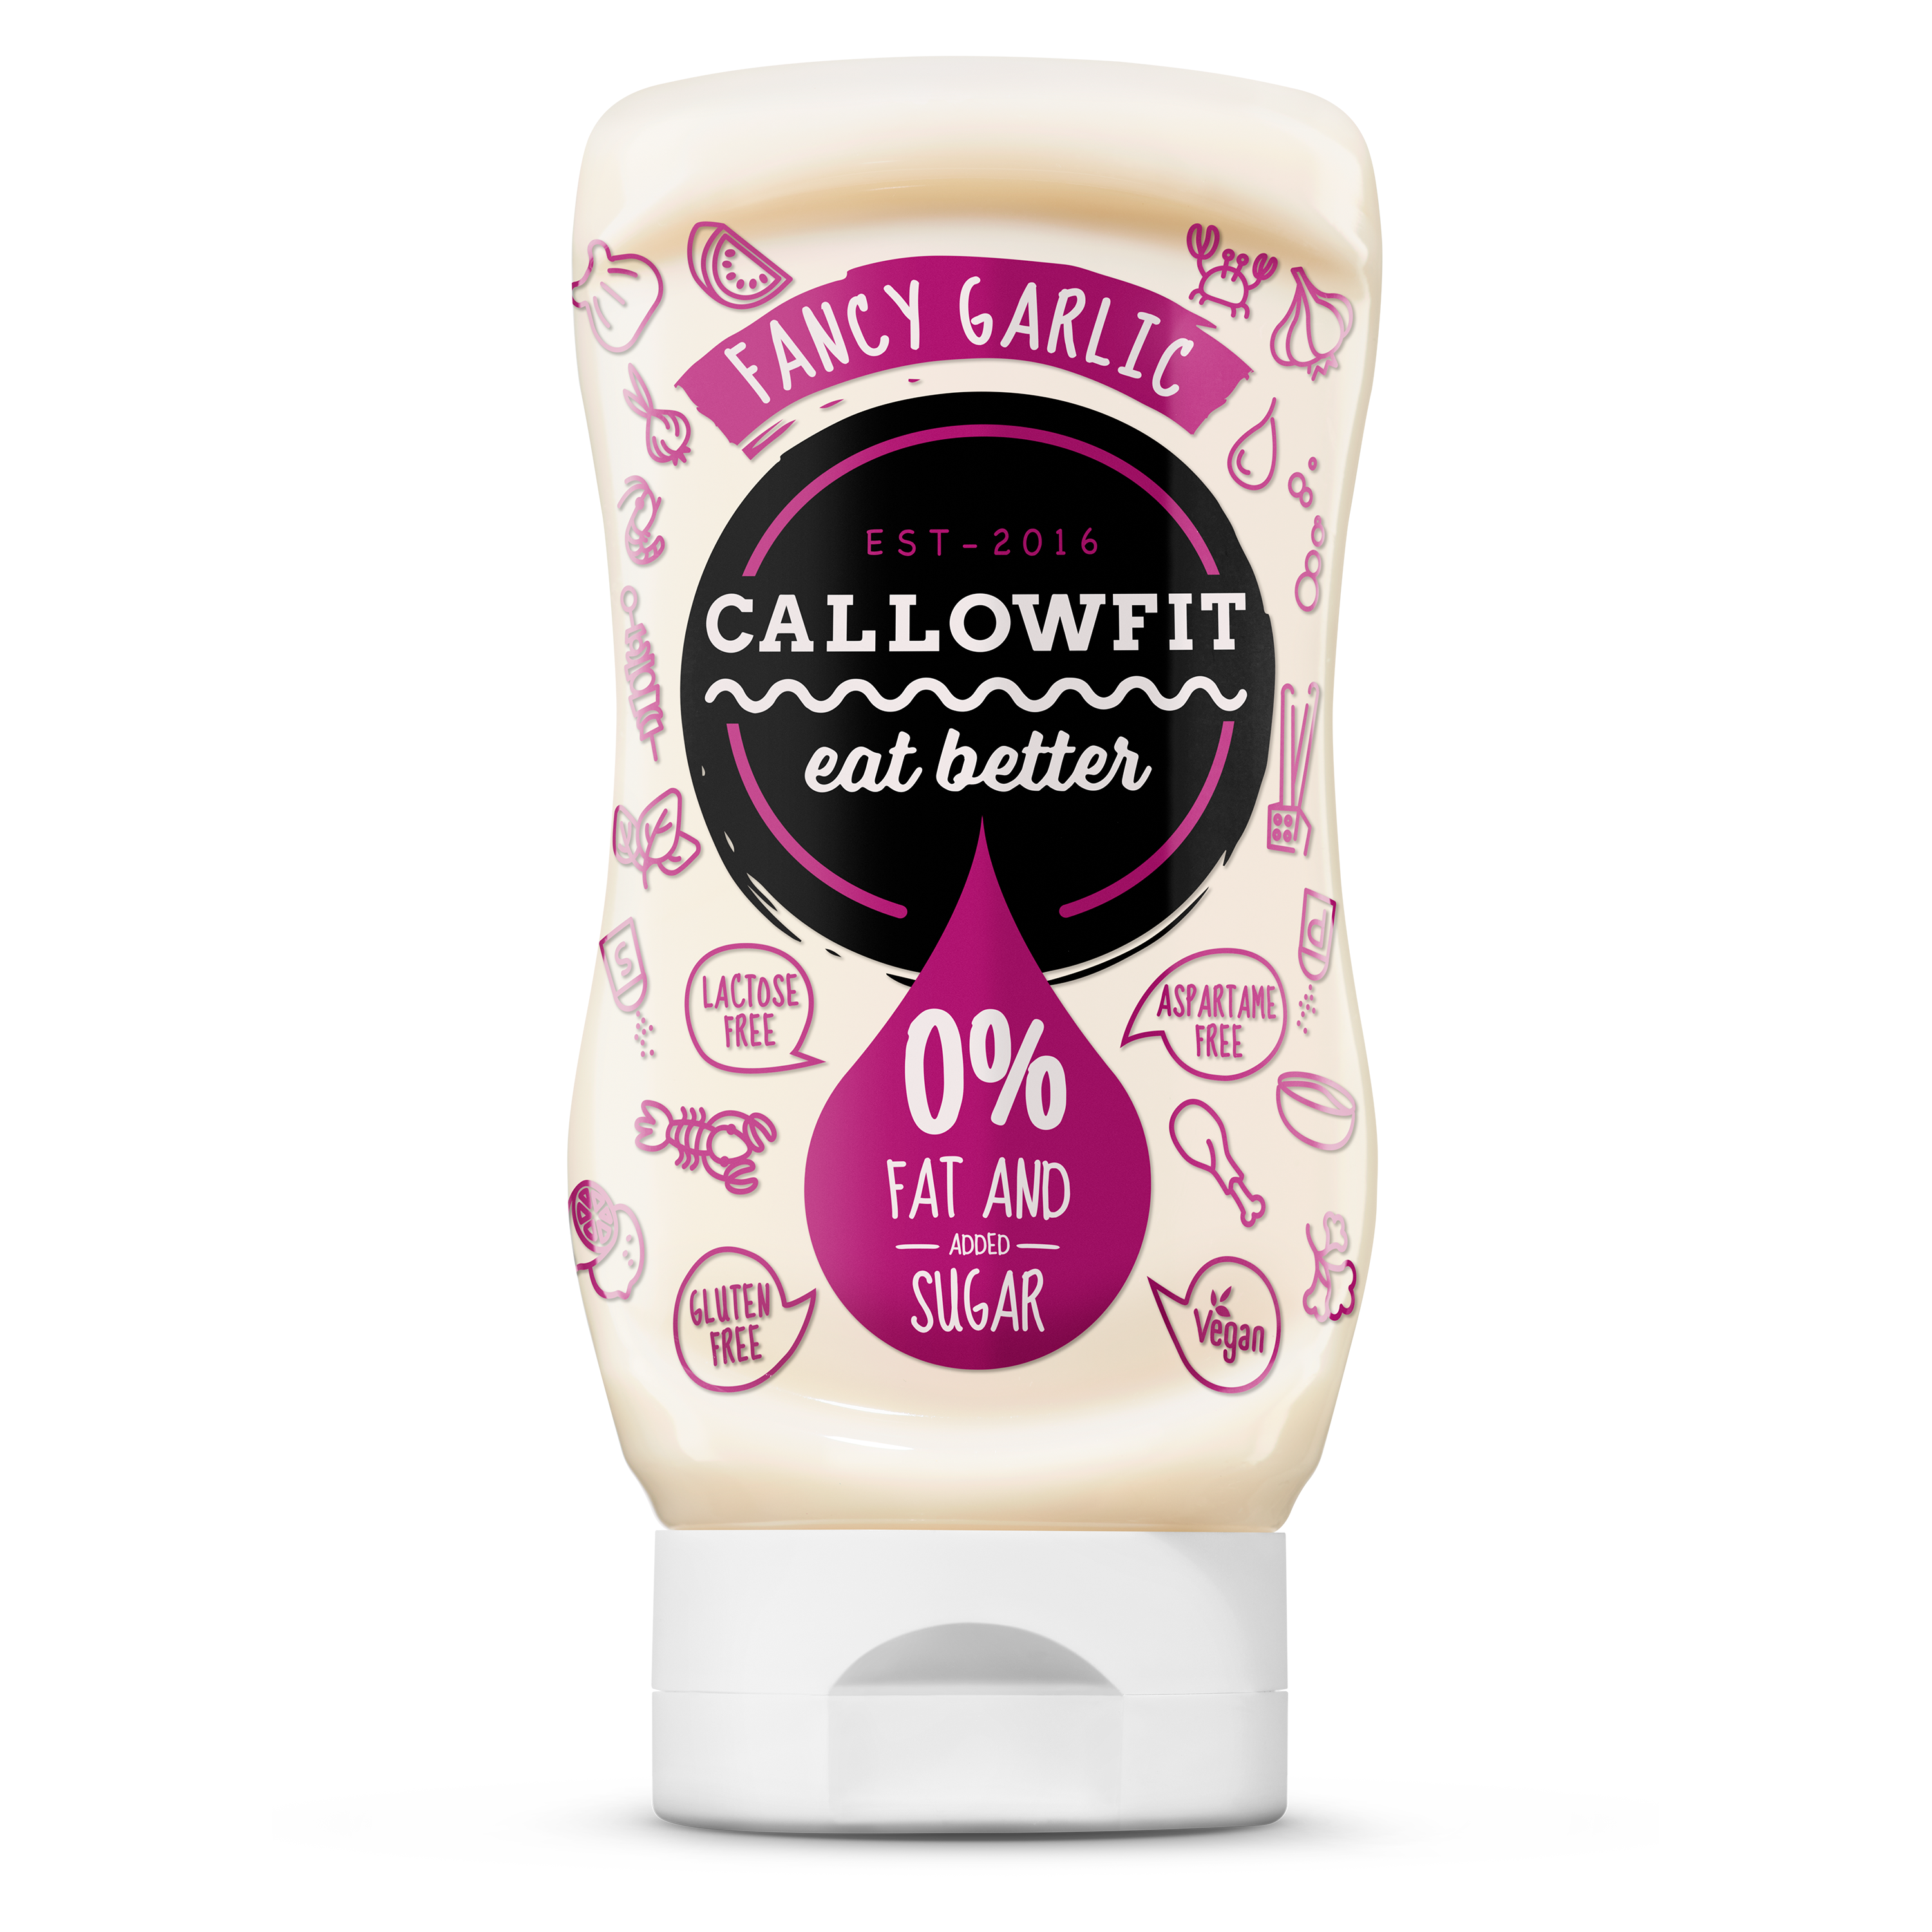 CALLOWFIT Sauce im Geschmack Fancy Garlic Style mit 0% Fett und Zucker in einer Tube mit bunten Aufdruck.